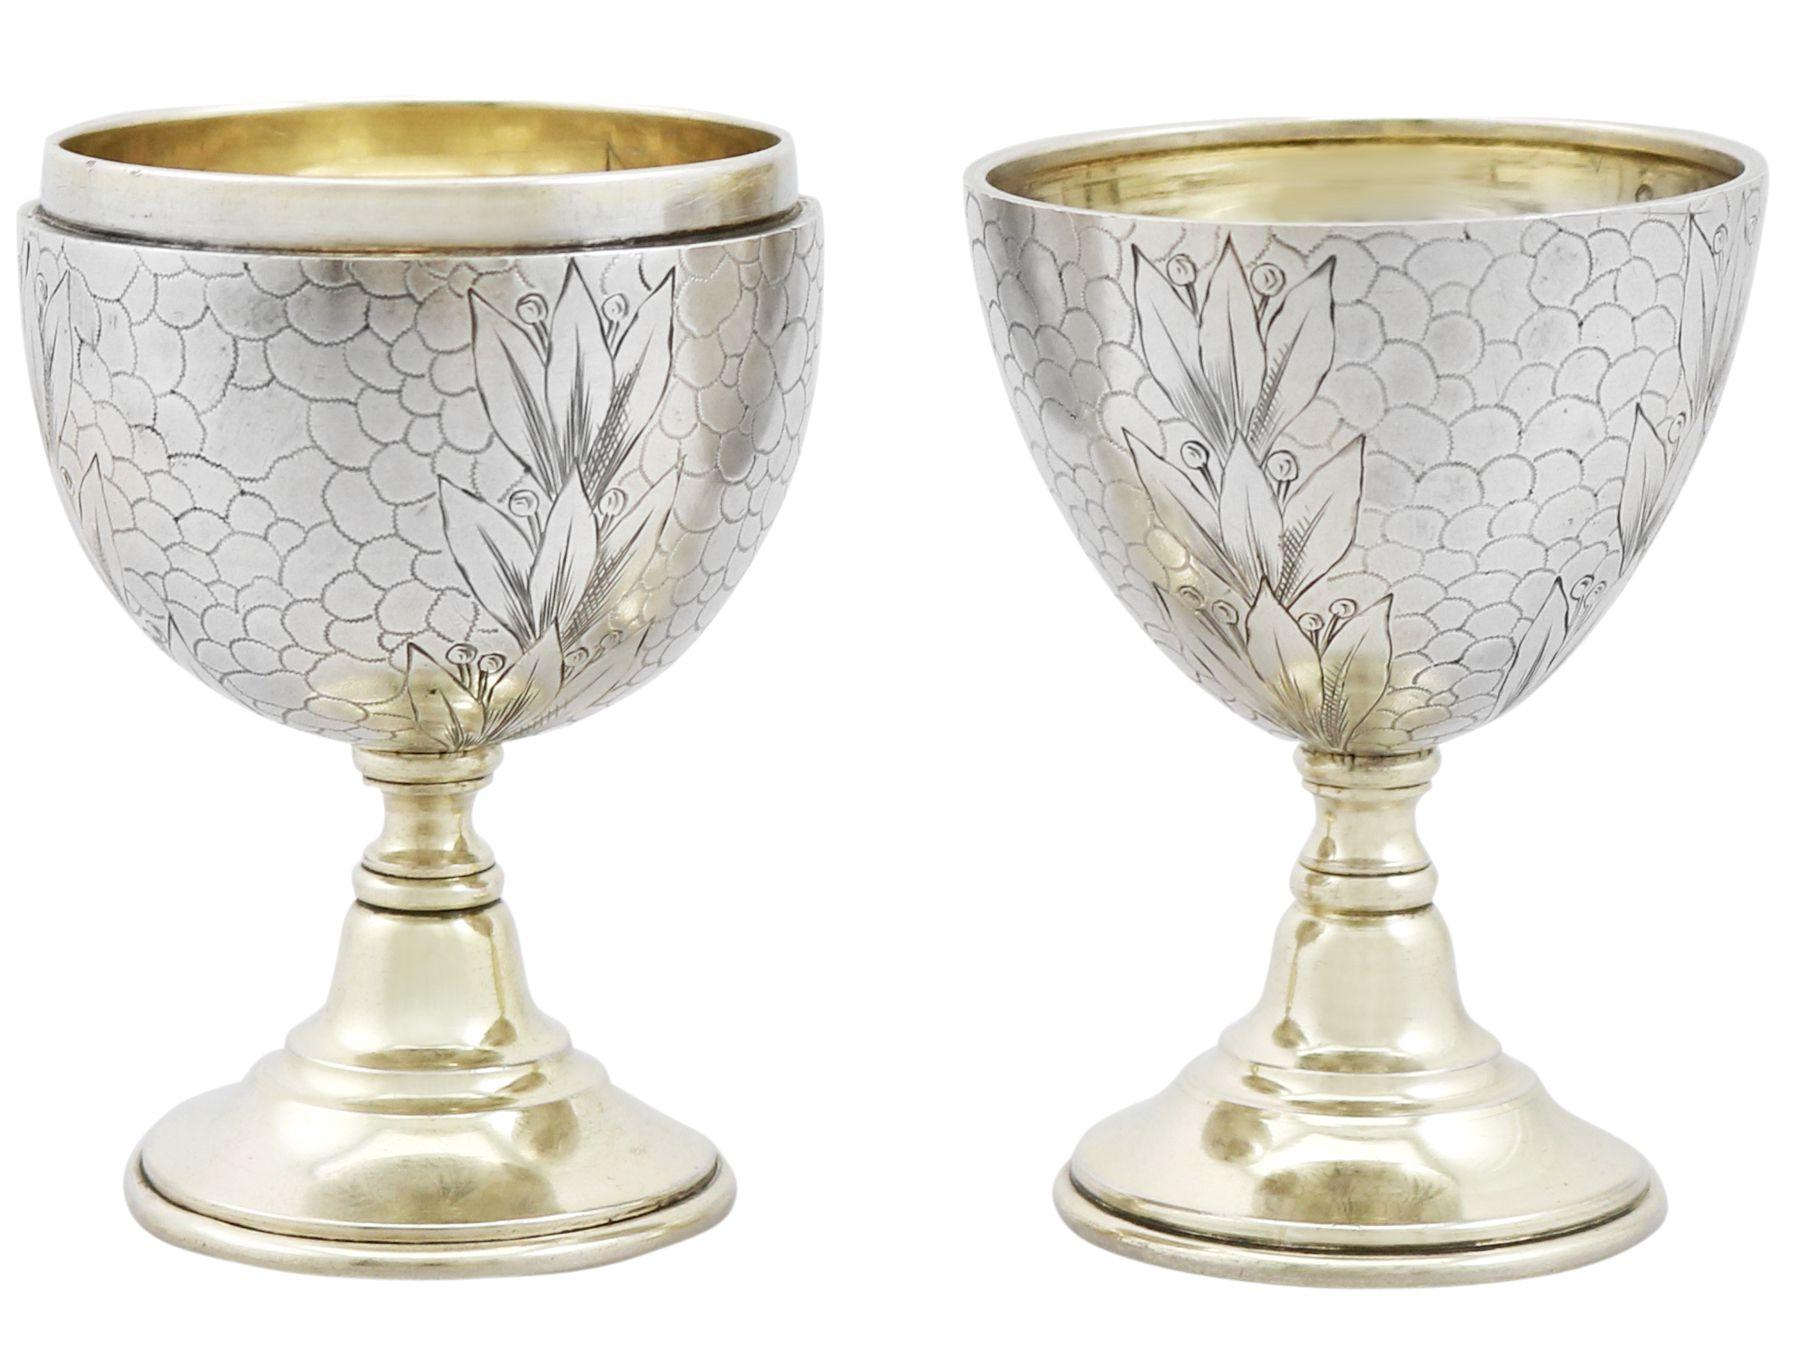 Ein außergewöhnliches, feines und beeindruckendes Paar antiker Eierbecher aus russischem Silber; eine Ergänzung zu unserer Sammlung von Silberbechern und Gewürzen.

Diese außergewöhnlichen antiken Eierbecher aus russischem Silber haben eine